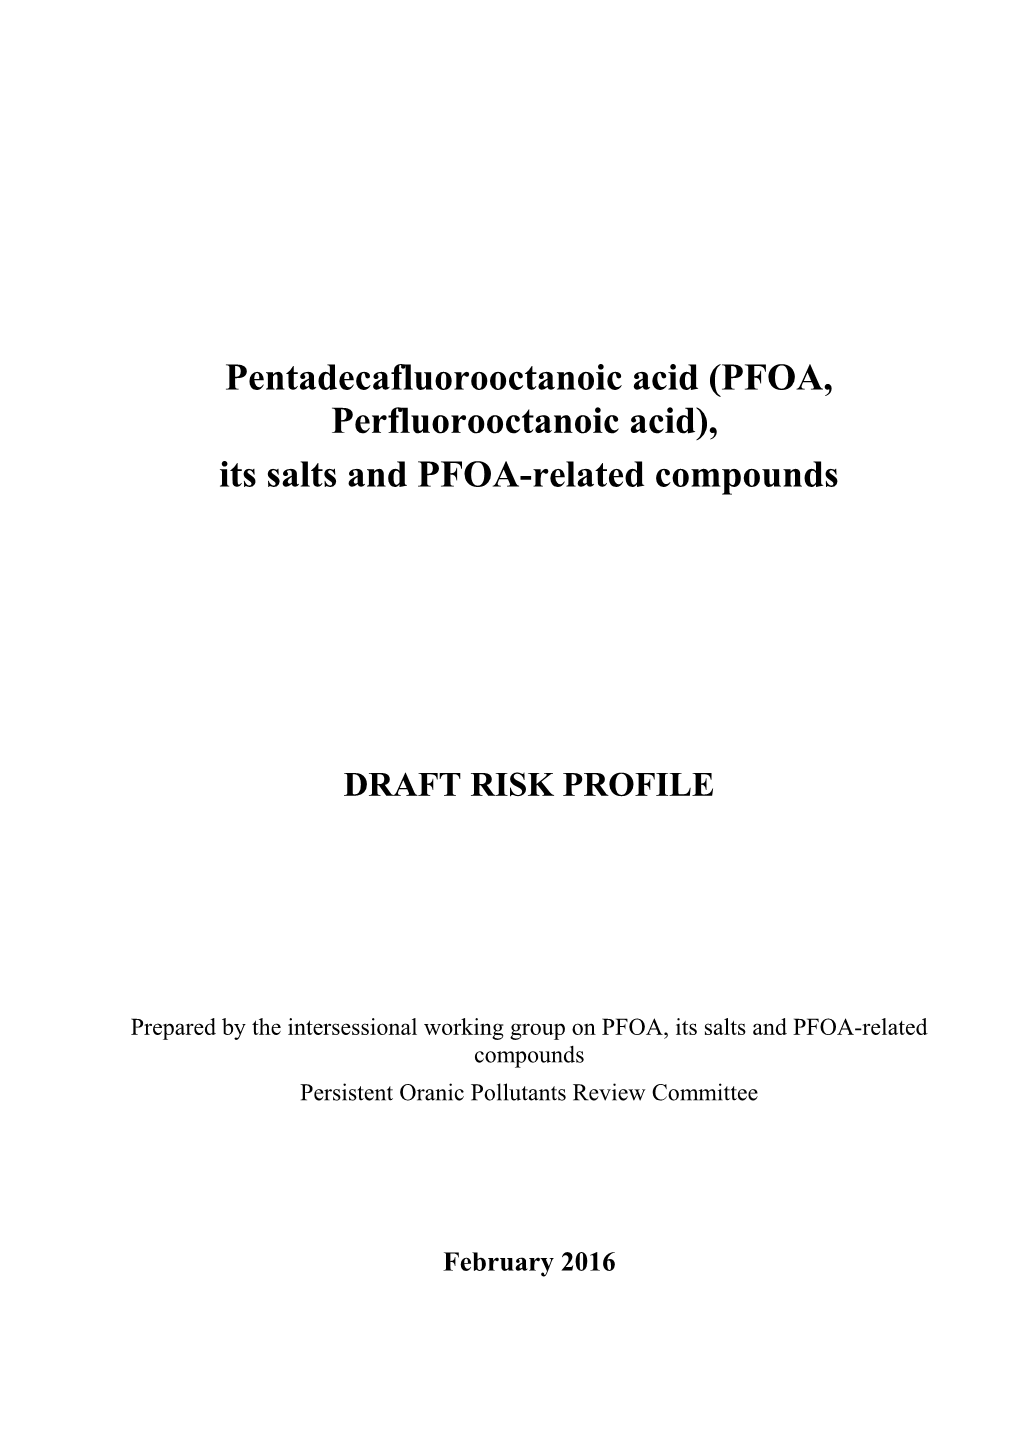 Pentadecafluorooctanoic Acid (PFOA, Perfluorooctanoic Acid)